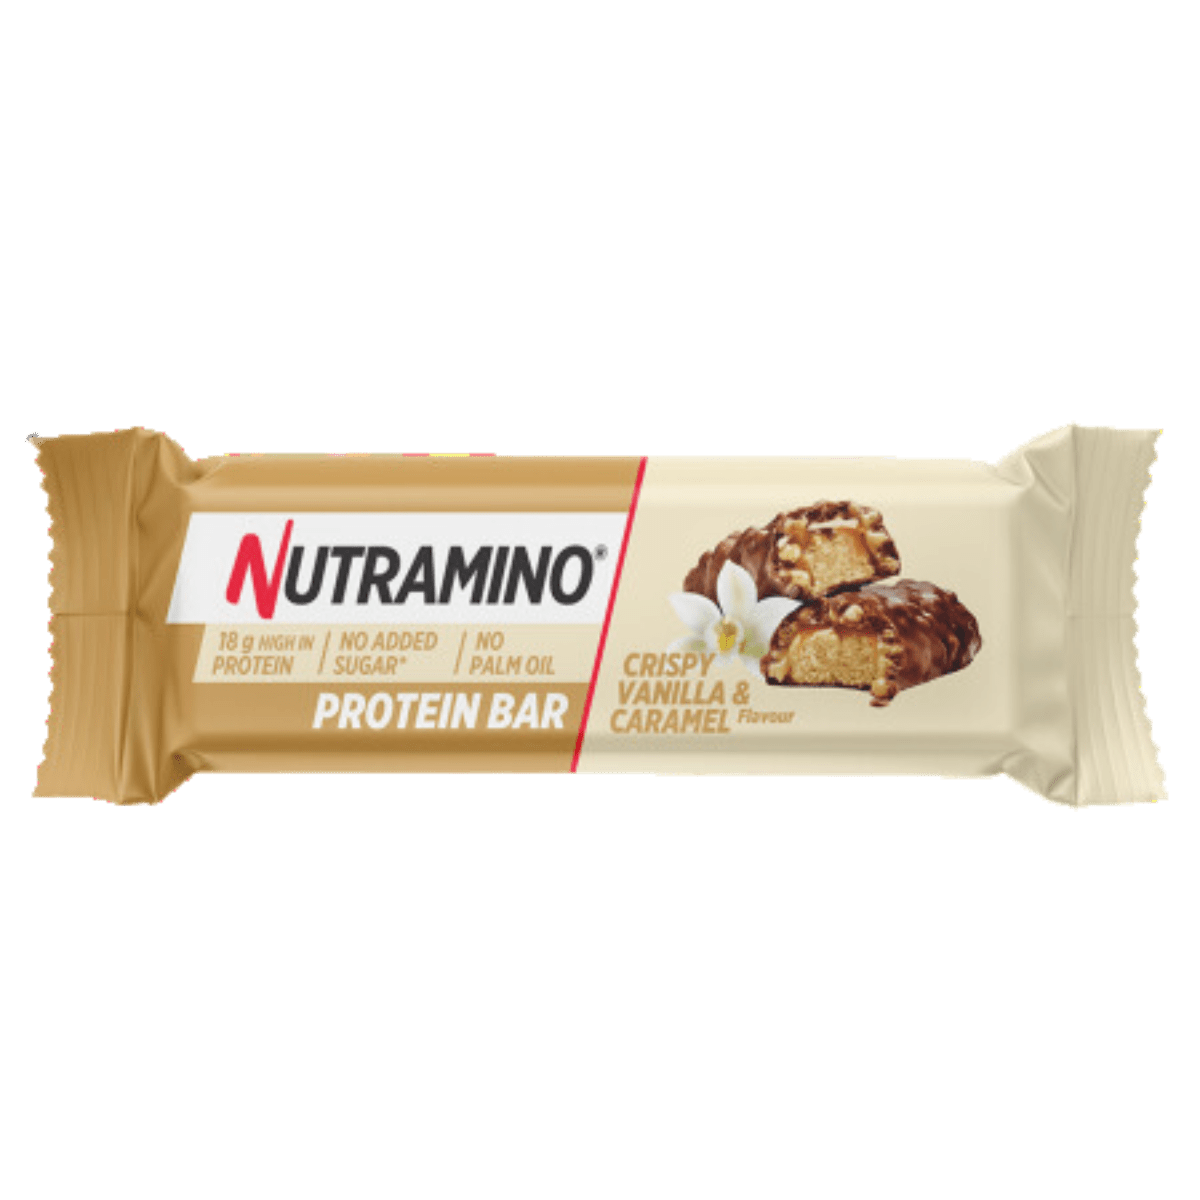 Nutramino Protein Bar